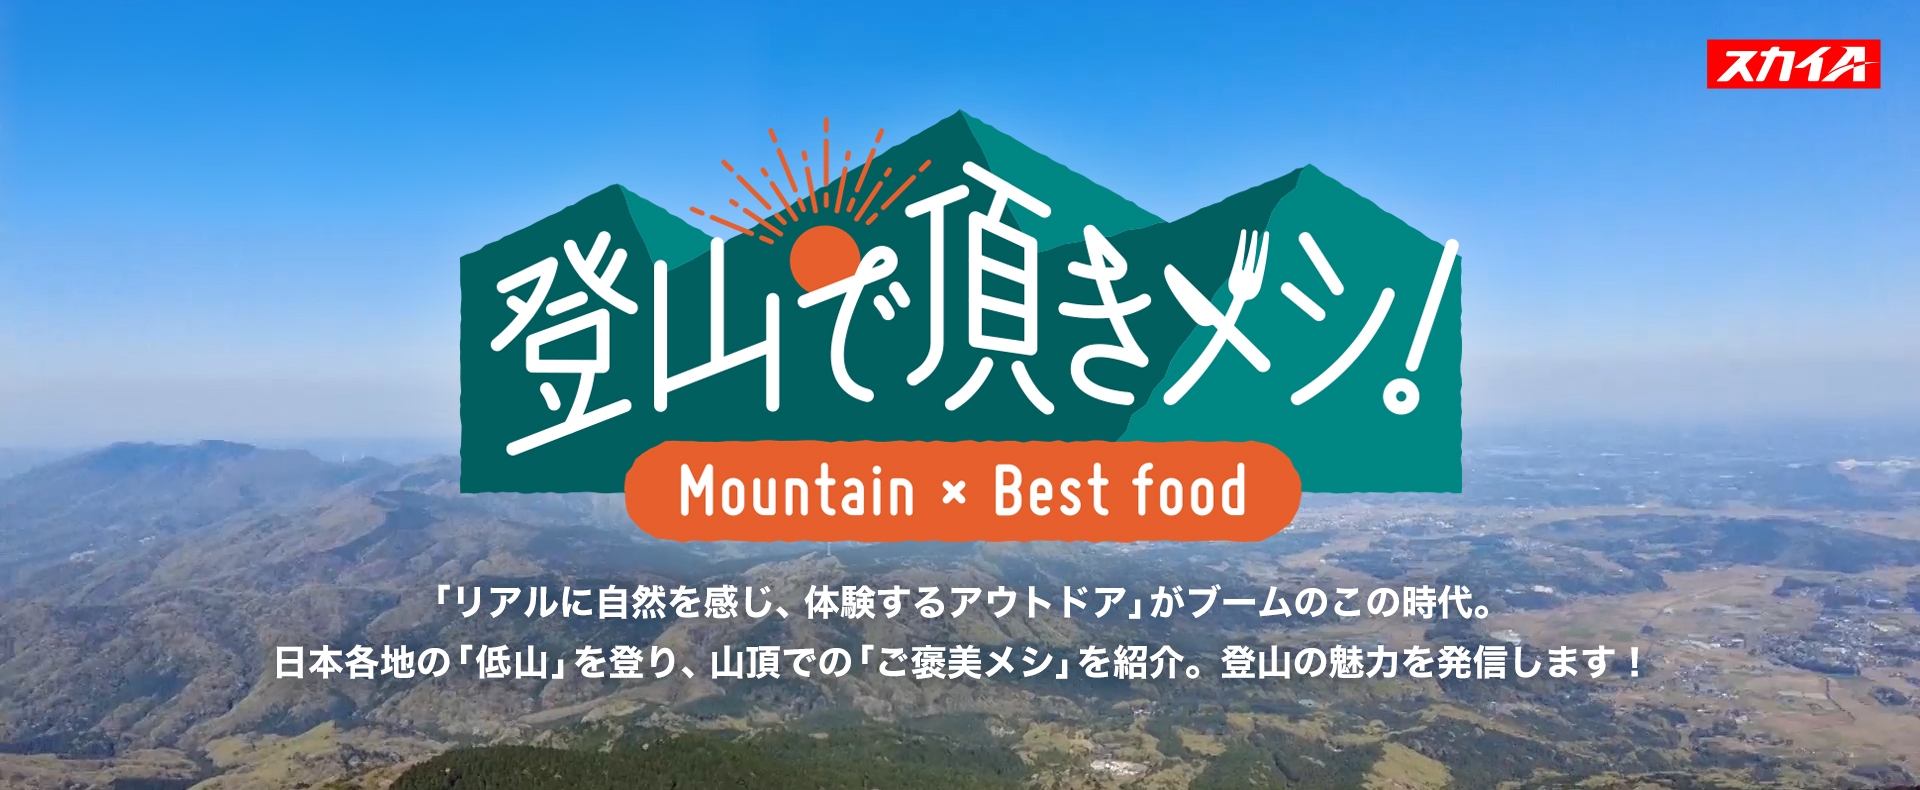 登山で頂きメシ！ Mountain × Best food 「リアルに自然を感じ、体験するアウトドア」がブームのこの時代。日本各地の「低山」を登り、山頂での「ご褒美メシ」を紹介。登山の魅力を発信します！